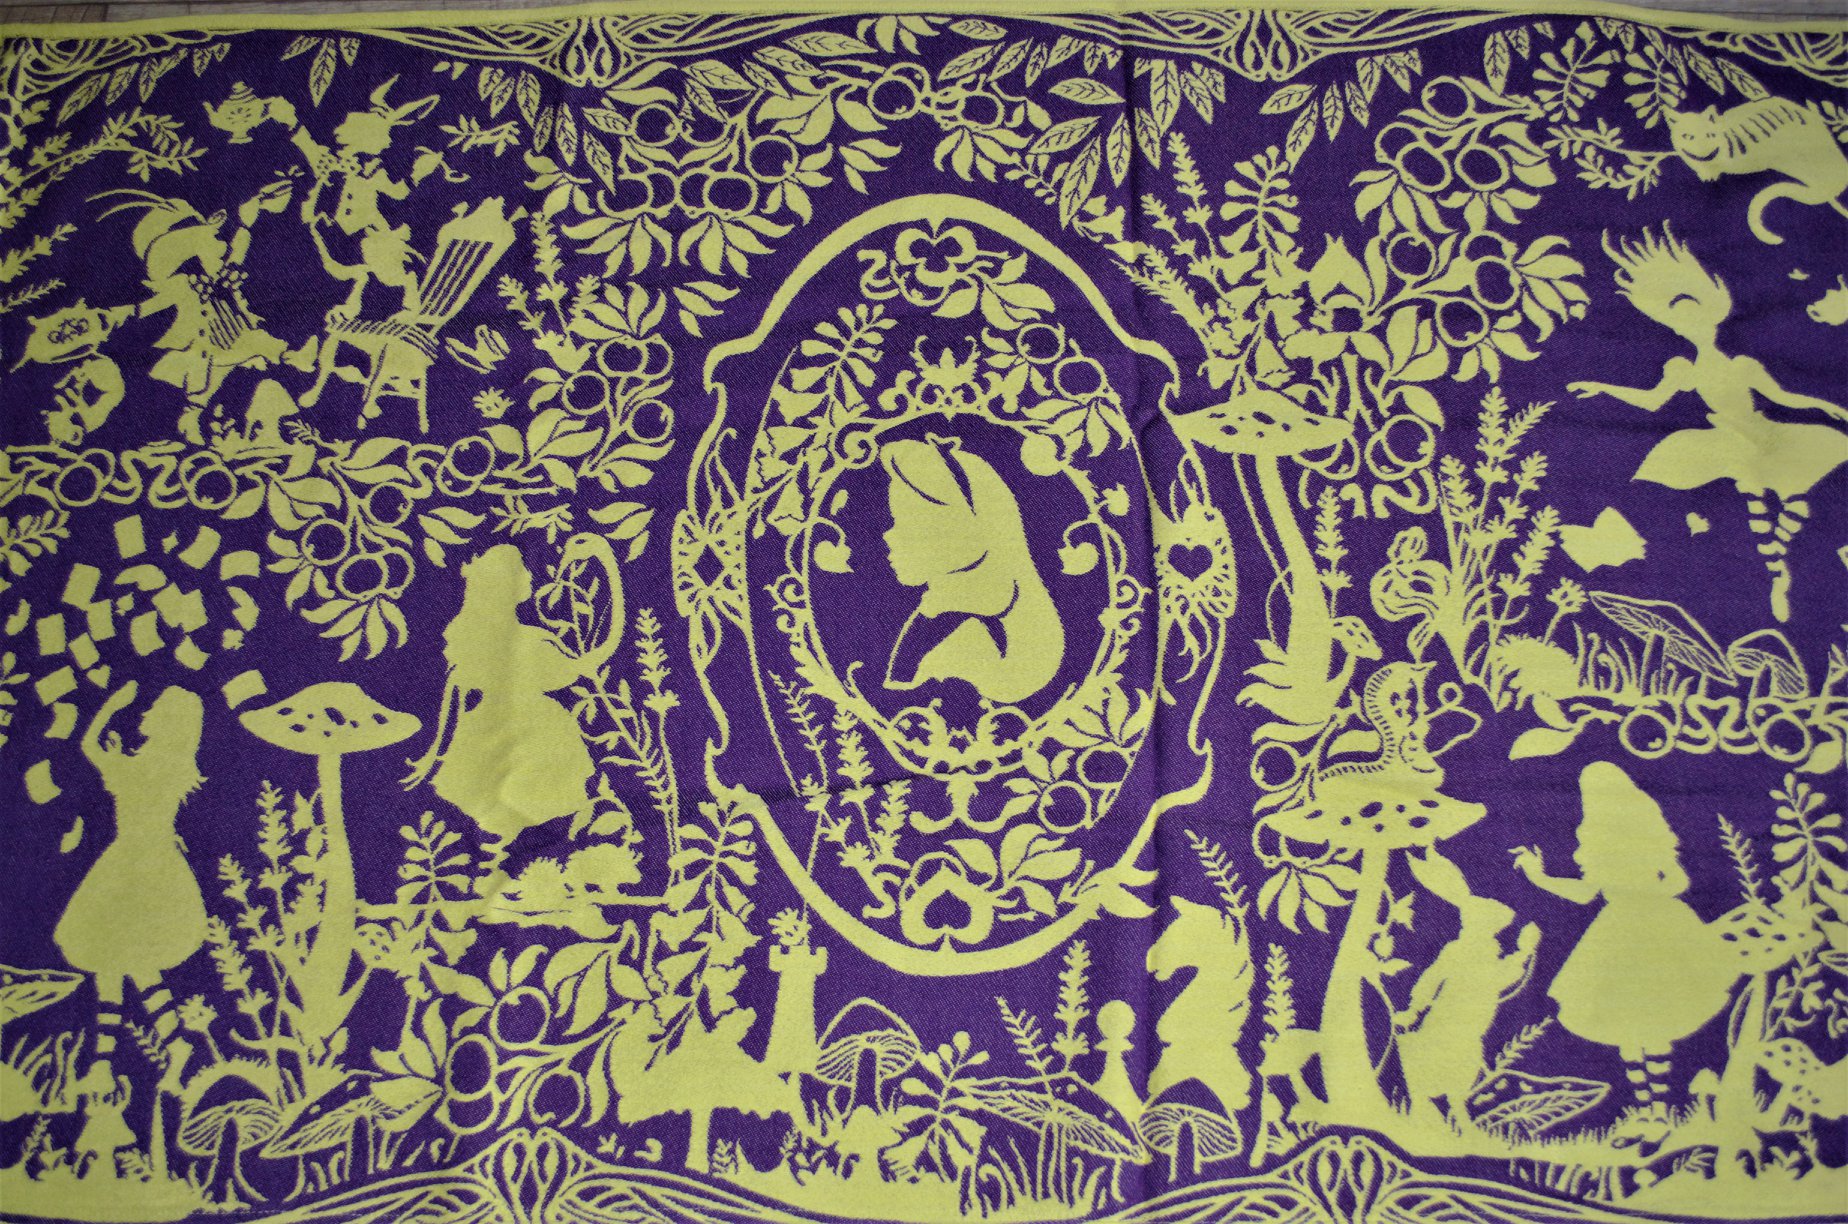 Mokosh-wrap Alice in Wonderland Cheshire Cat (merino) Image